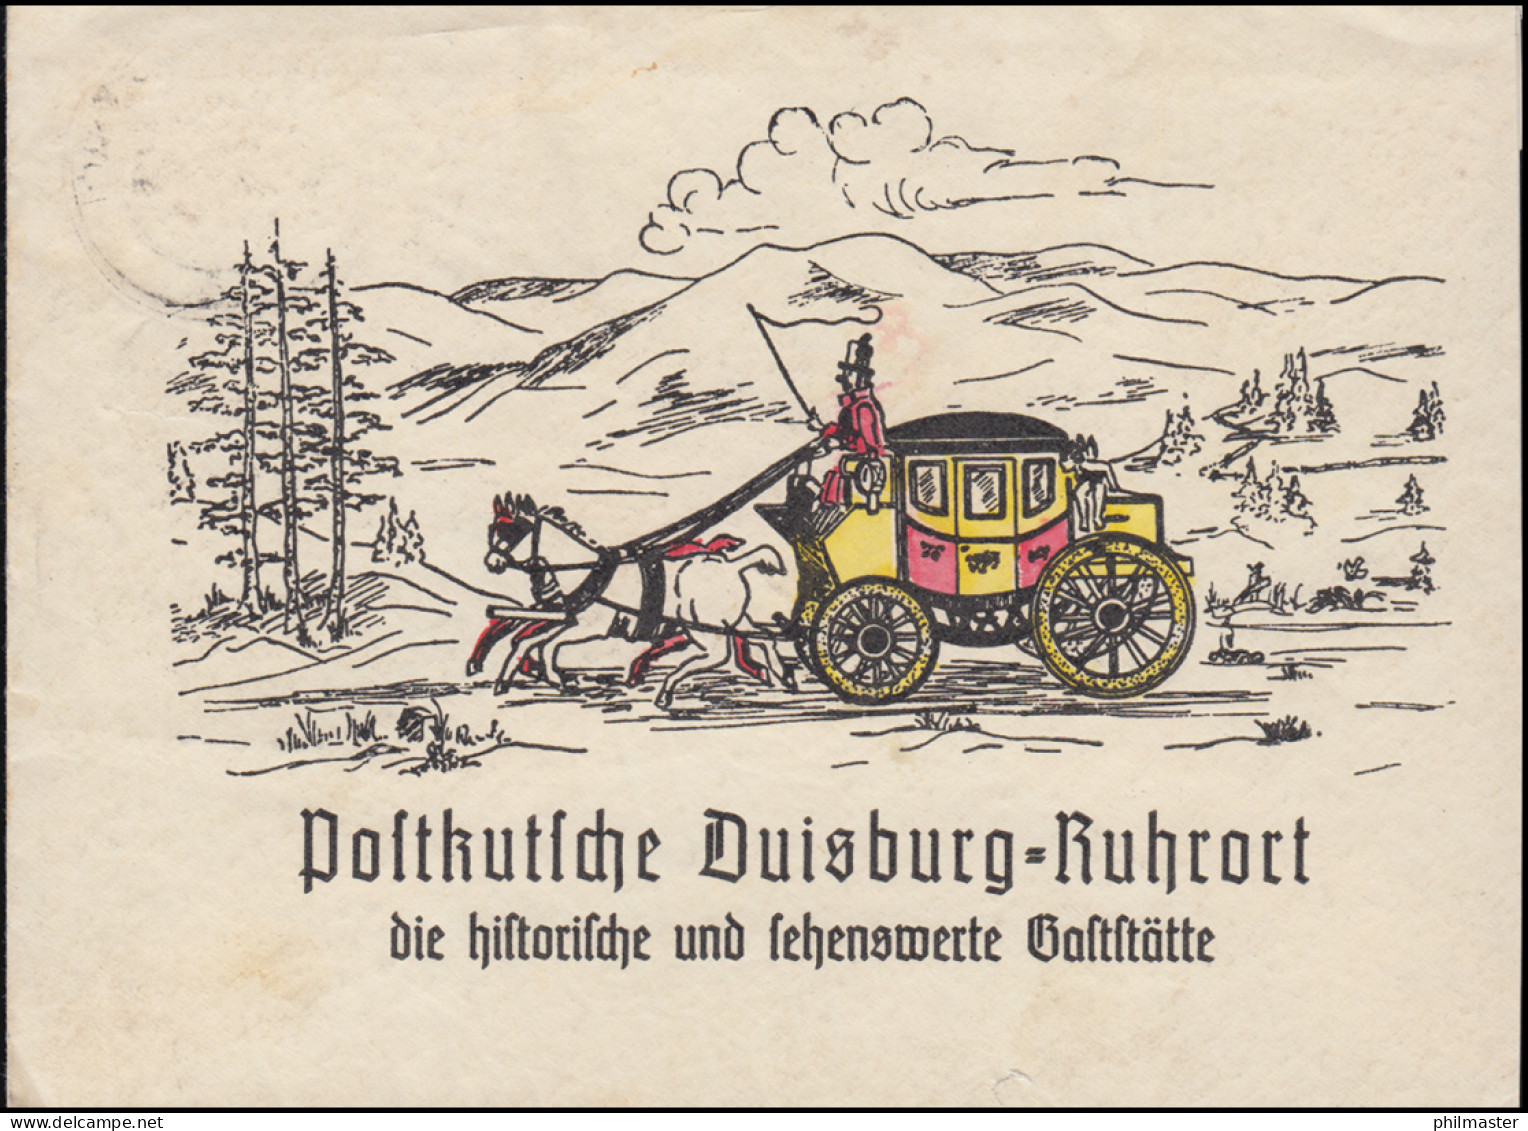 Schmuck-Brief Postkutsche Duisburg-Ruhrort Historische & Sehenswerte Gaststätte - Diligences